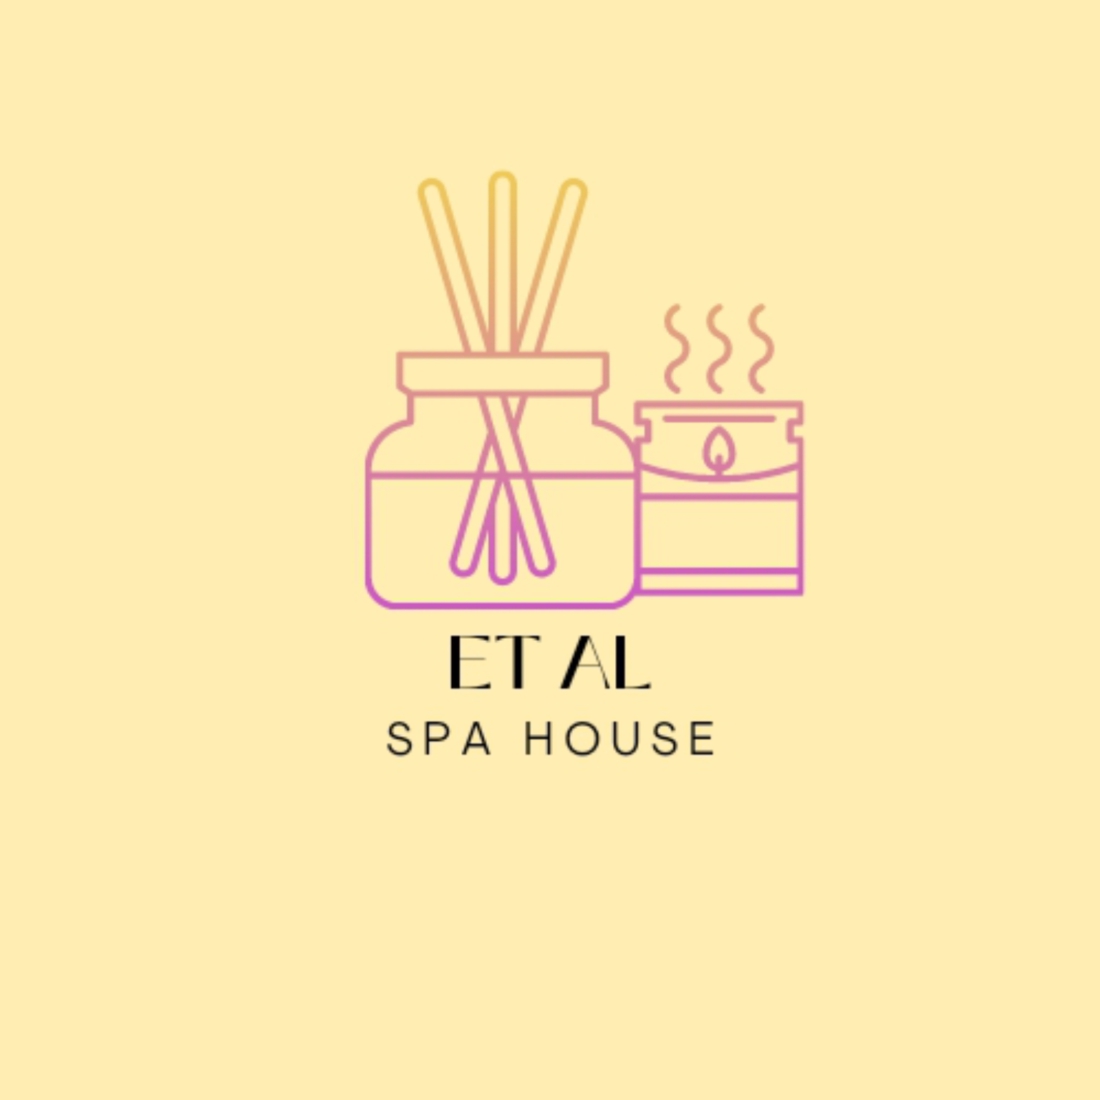 Et Al Spa house logo design preview image.